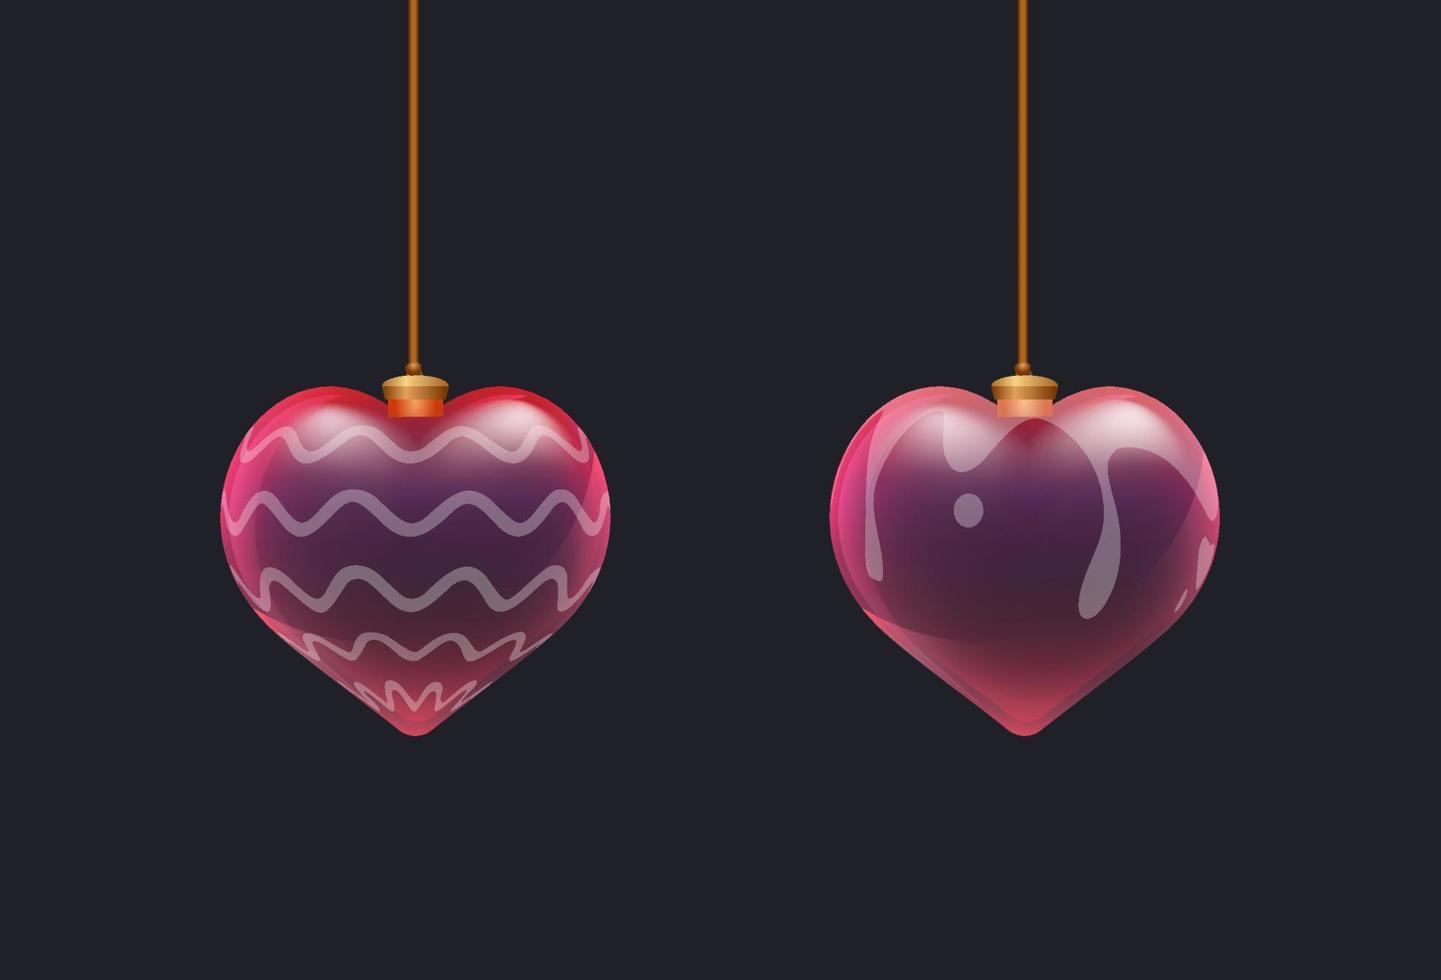 paire de jouets coeur en verre rouge 3d avec motif sur la surface. éléments de la saint-valentin. décor pour impression, flyer, bannière, web ou publicité vecteur